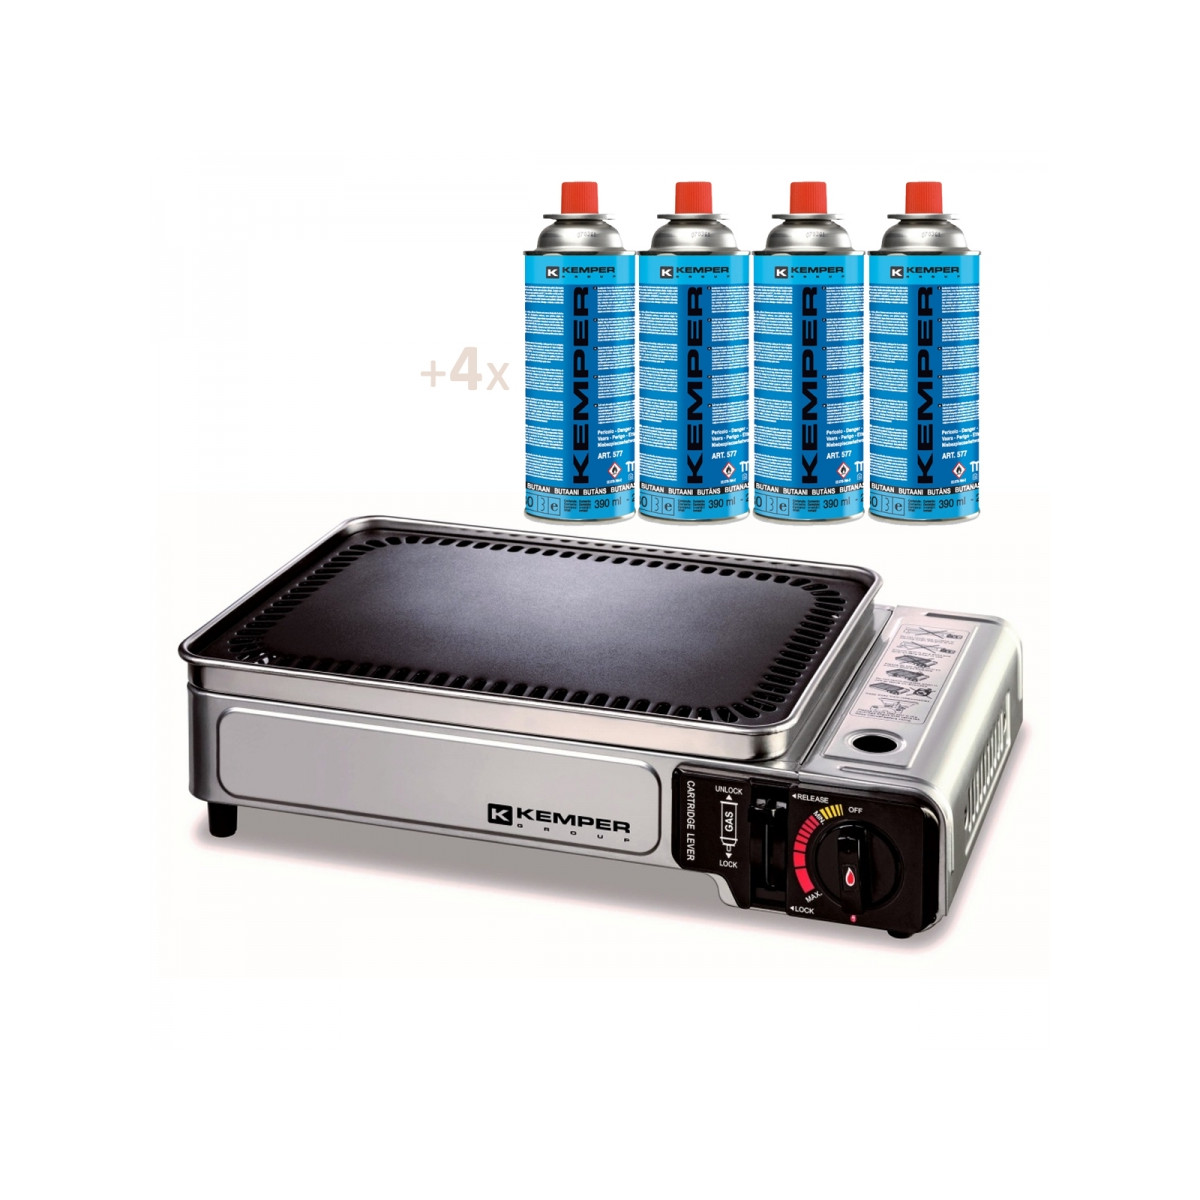 PIASTRA grill fornello portatile a gas BBQ ANTIADERENTE BARBECUE CAMPING 32cm 